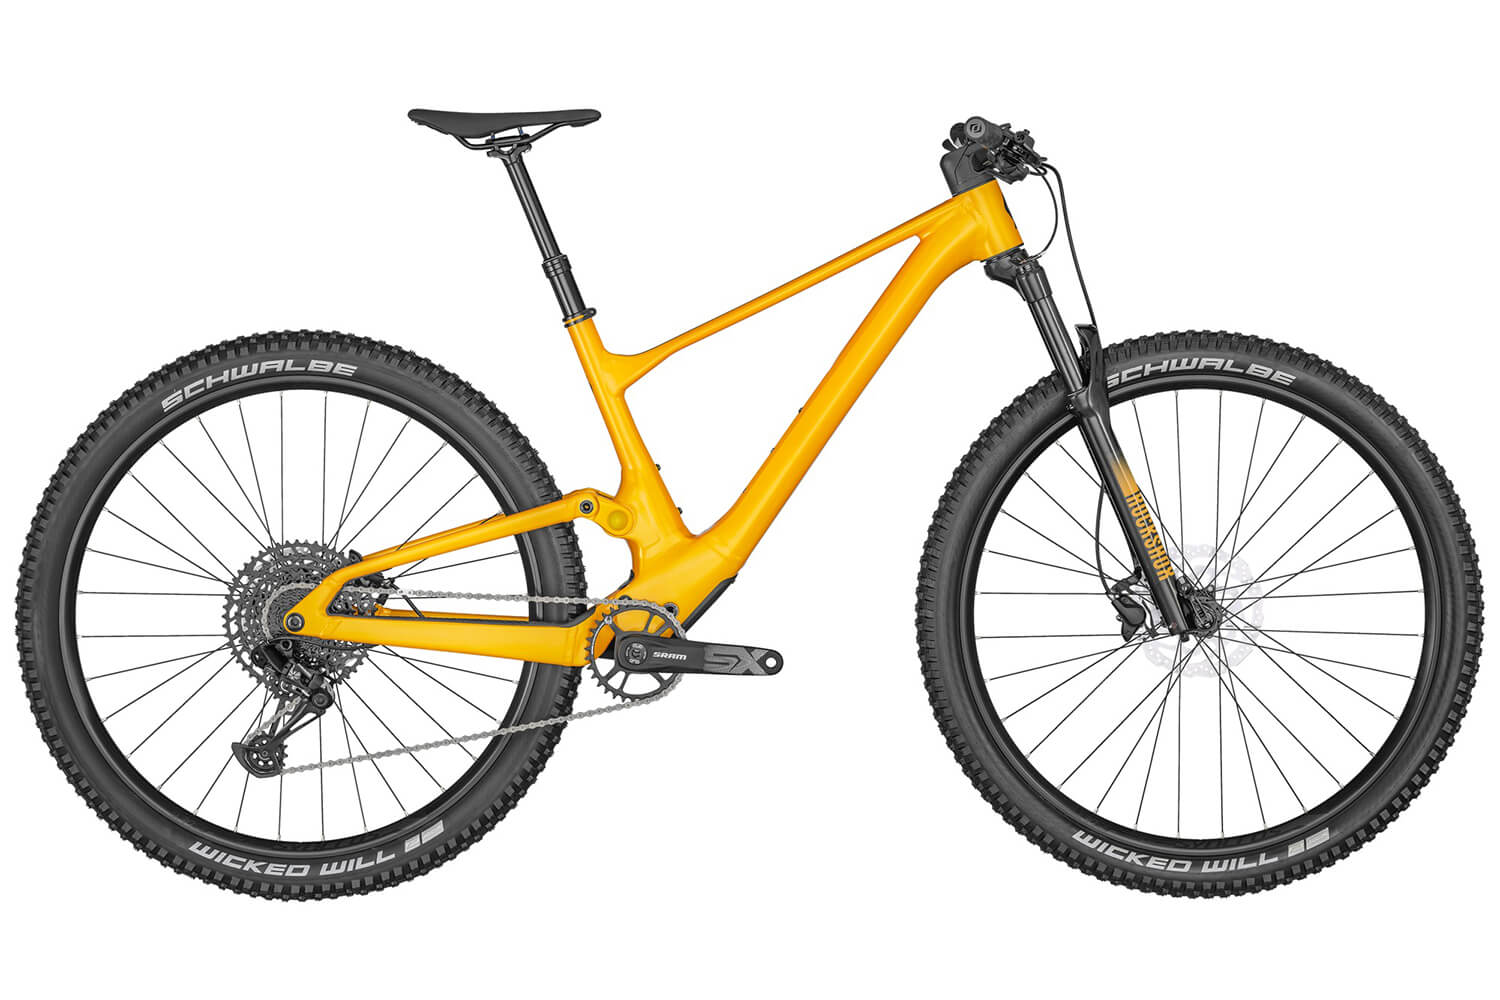  Отзывы о Двухподвесном велосипеде Scott Spark 970 2022